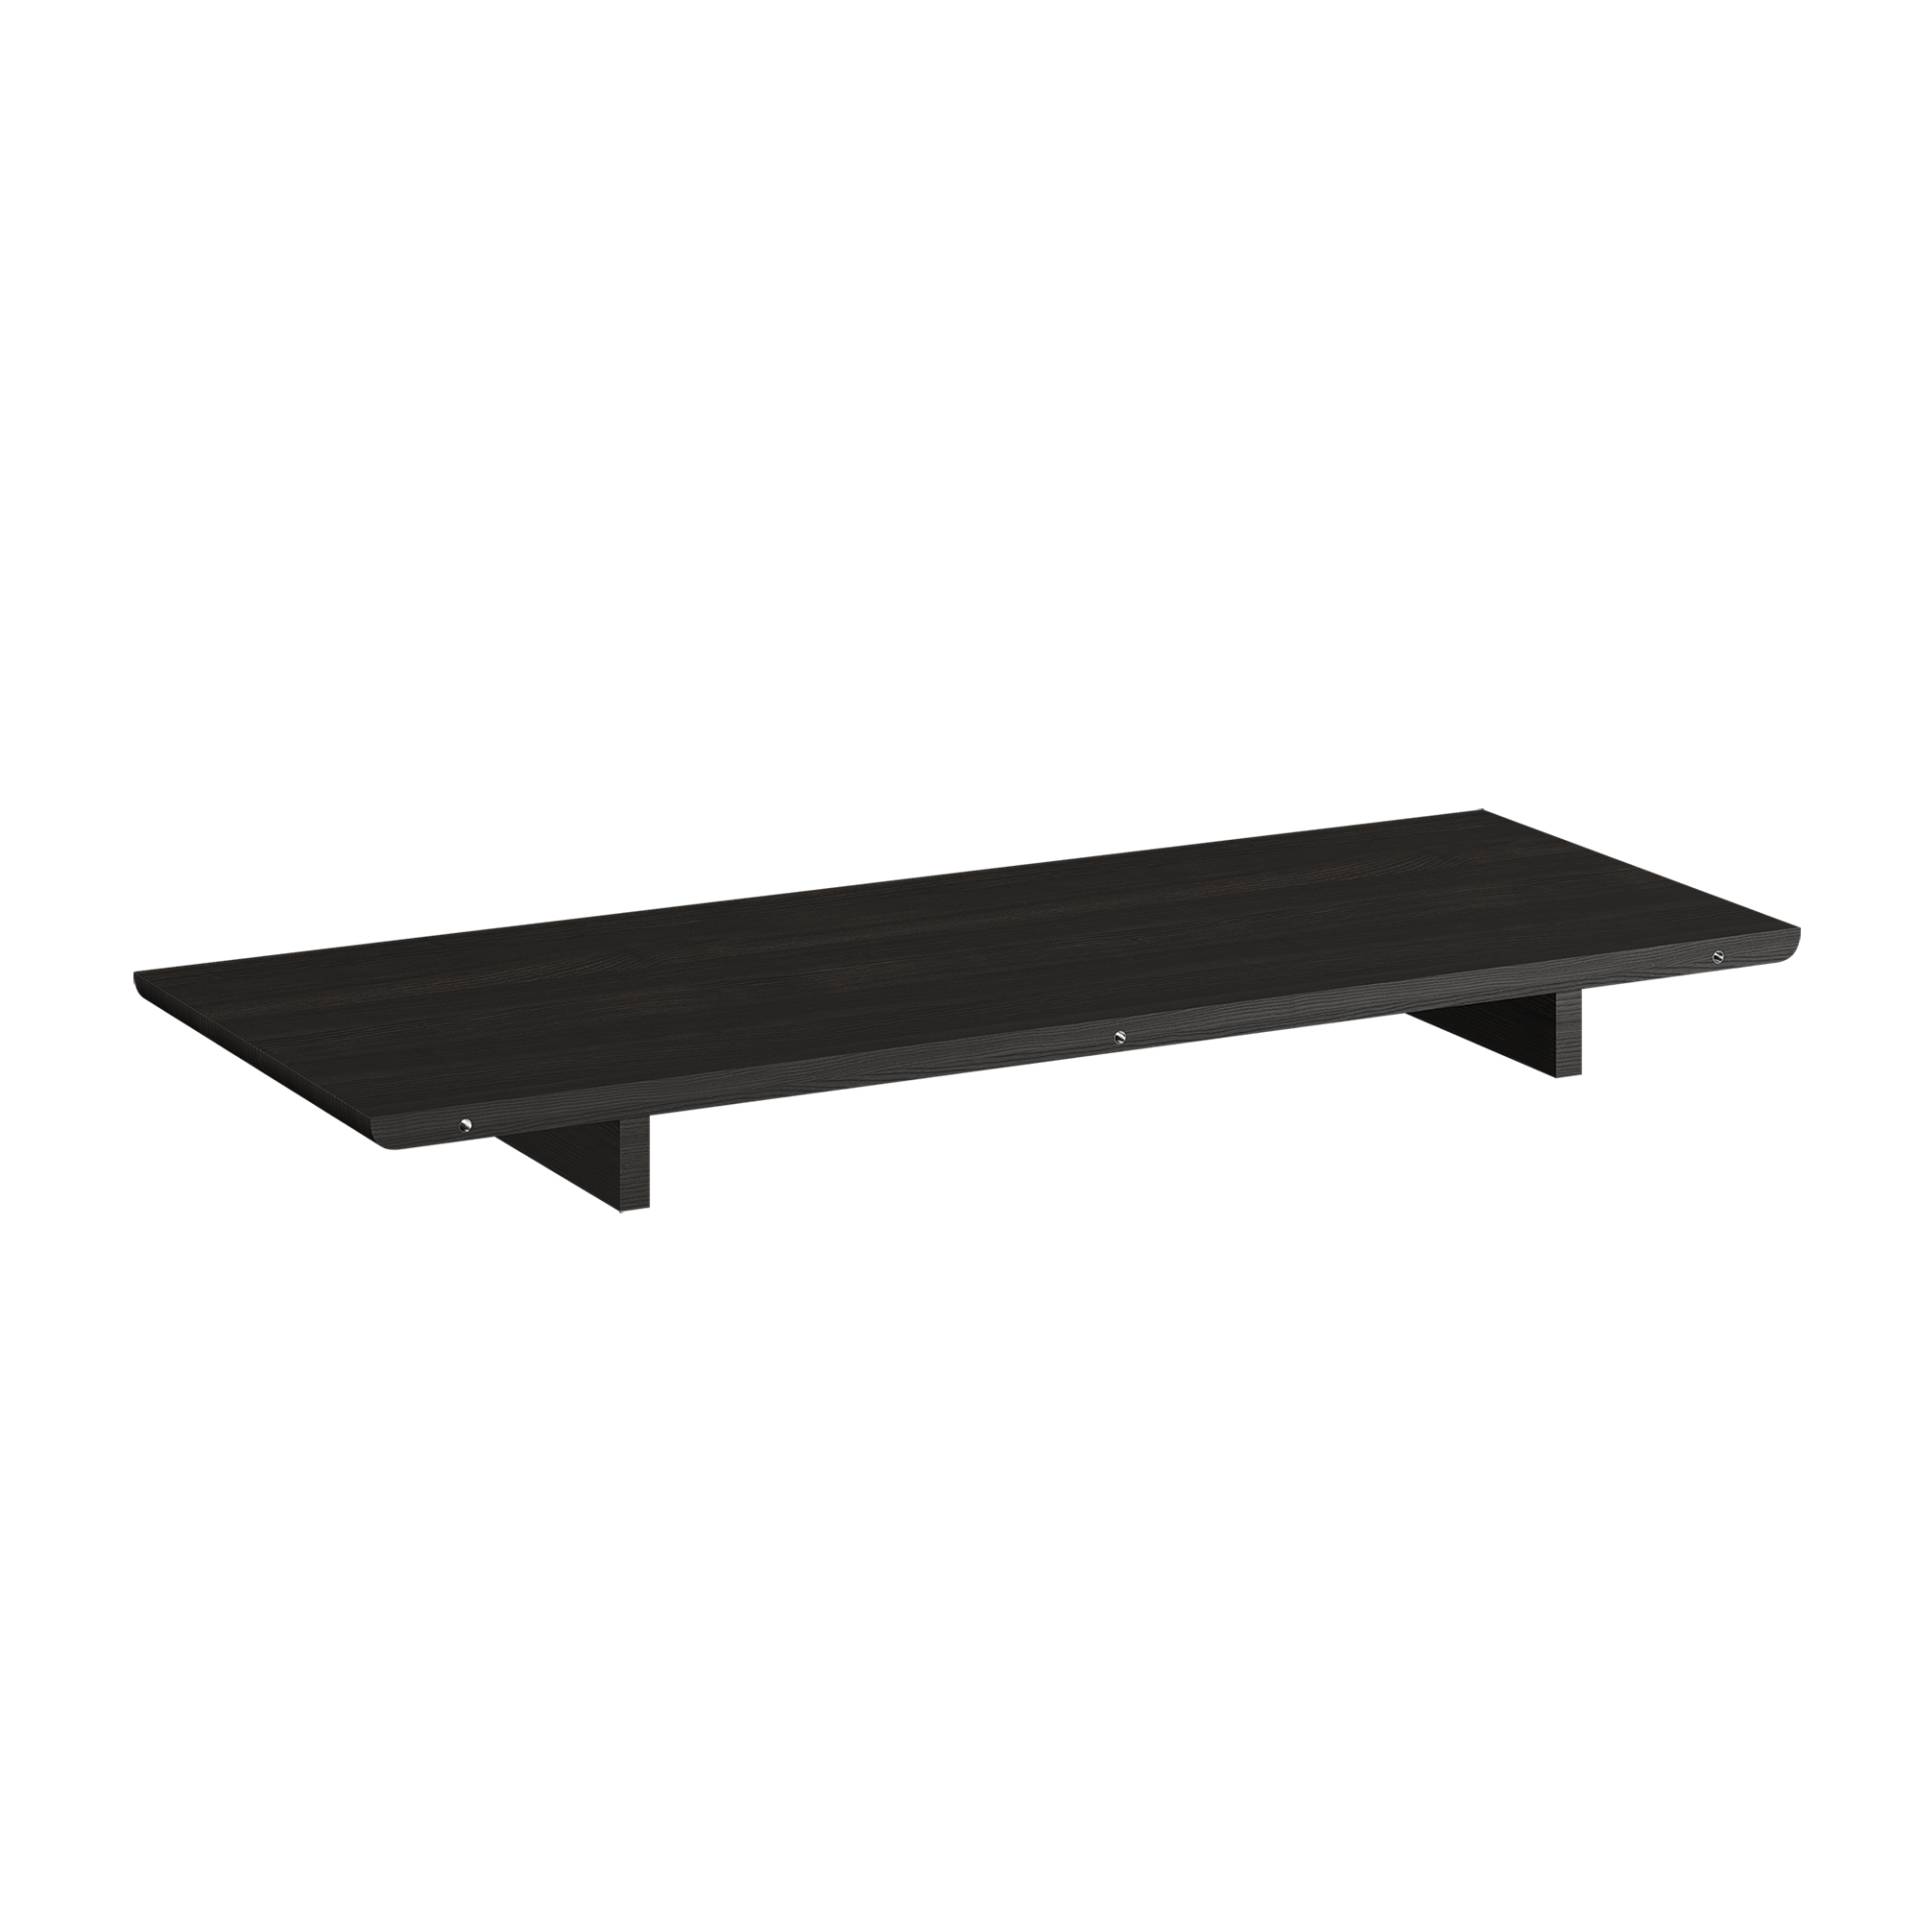 Northern - Expand Tischverlängerung 120x50cm - schwarz/lackiert/LxB 120x50cm/für Expand Esstisch rund von Northern